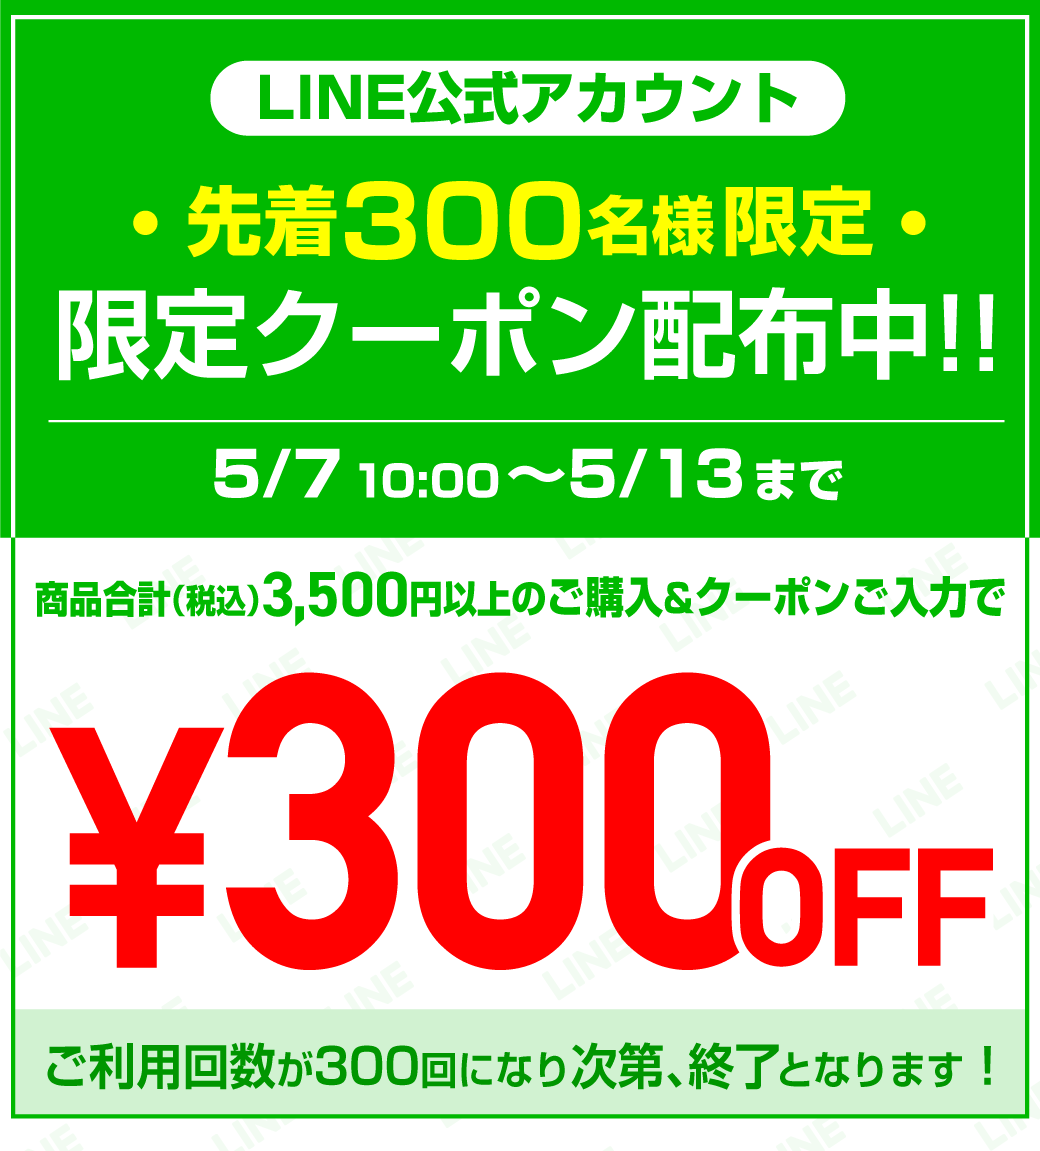 LINE友だち限定!300円OFFクーポン配布中！